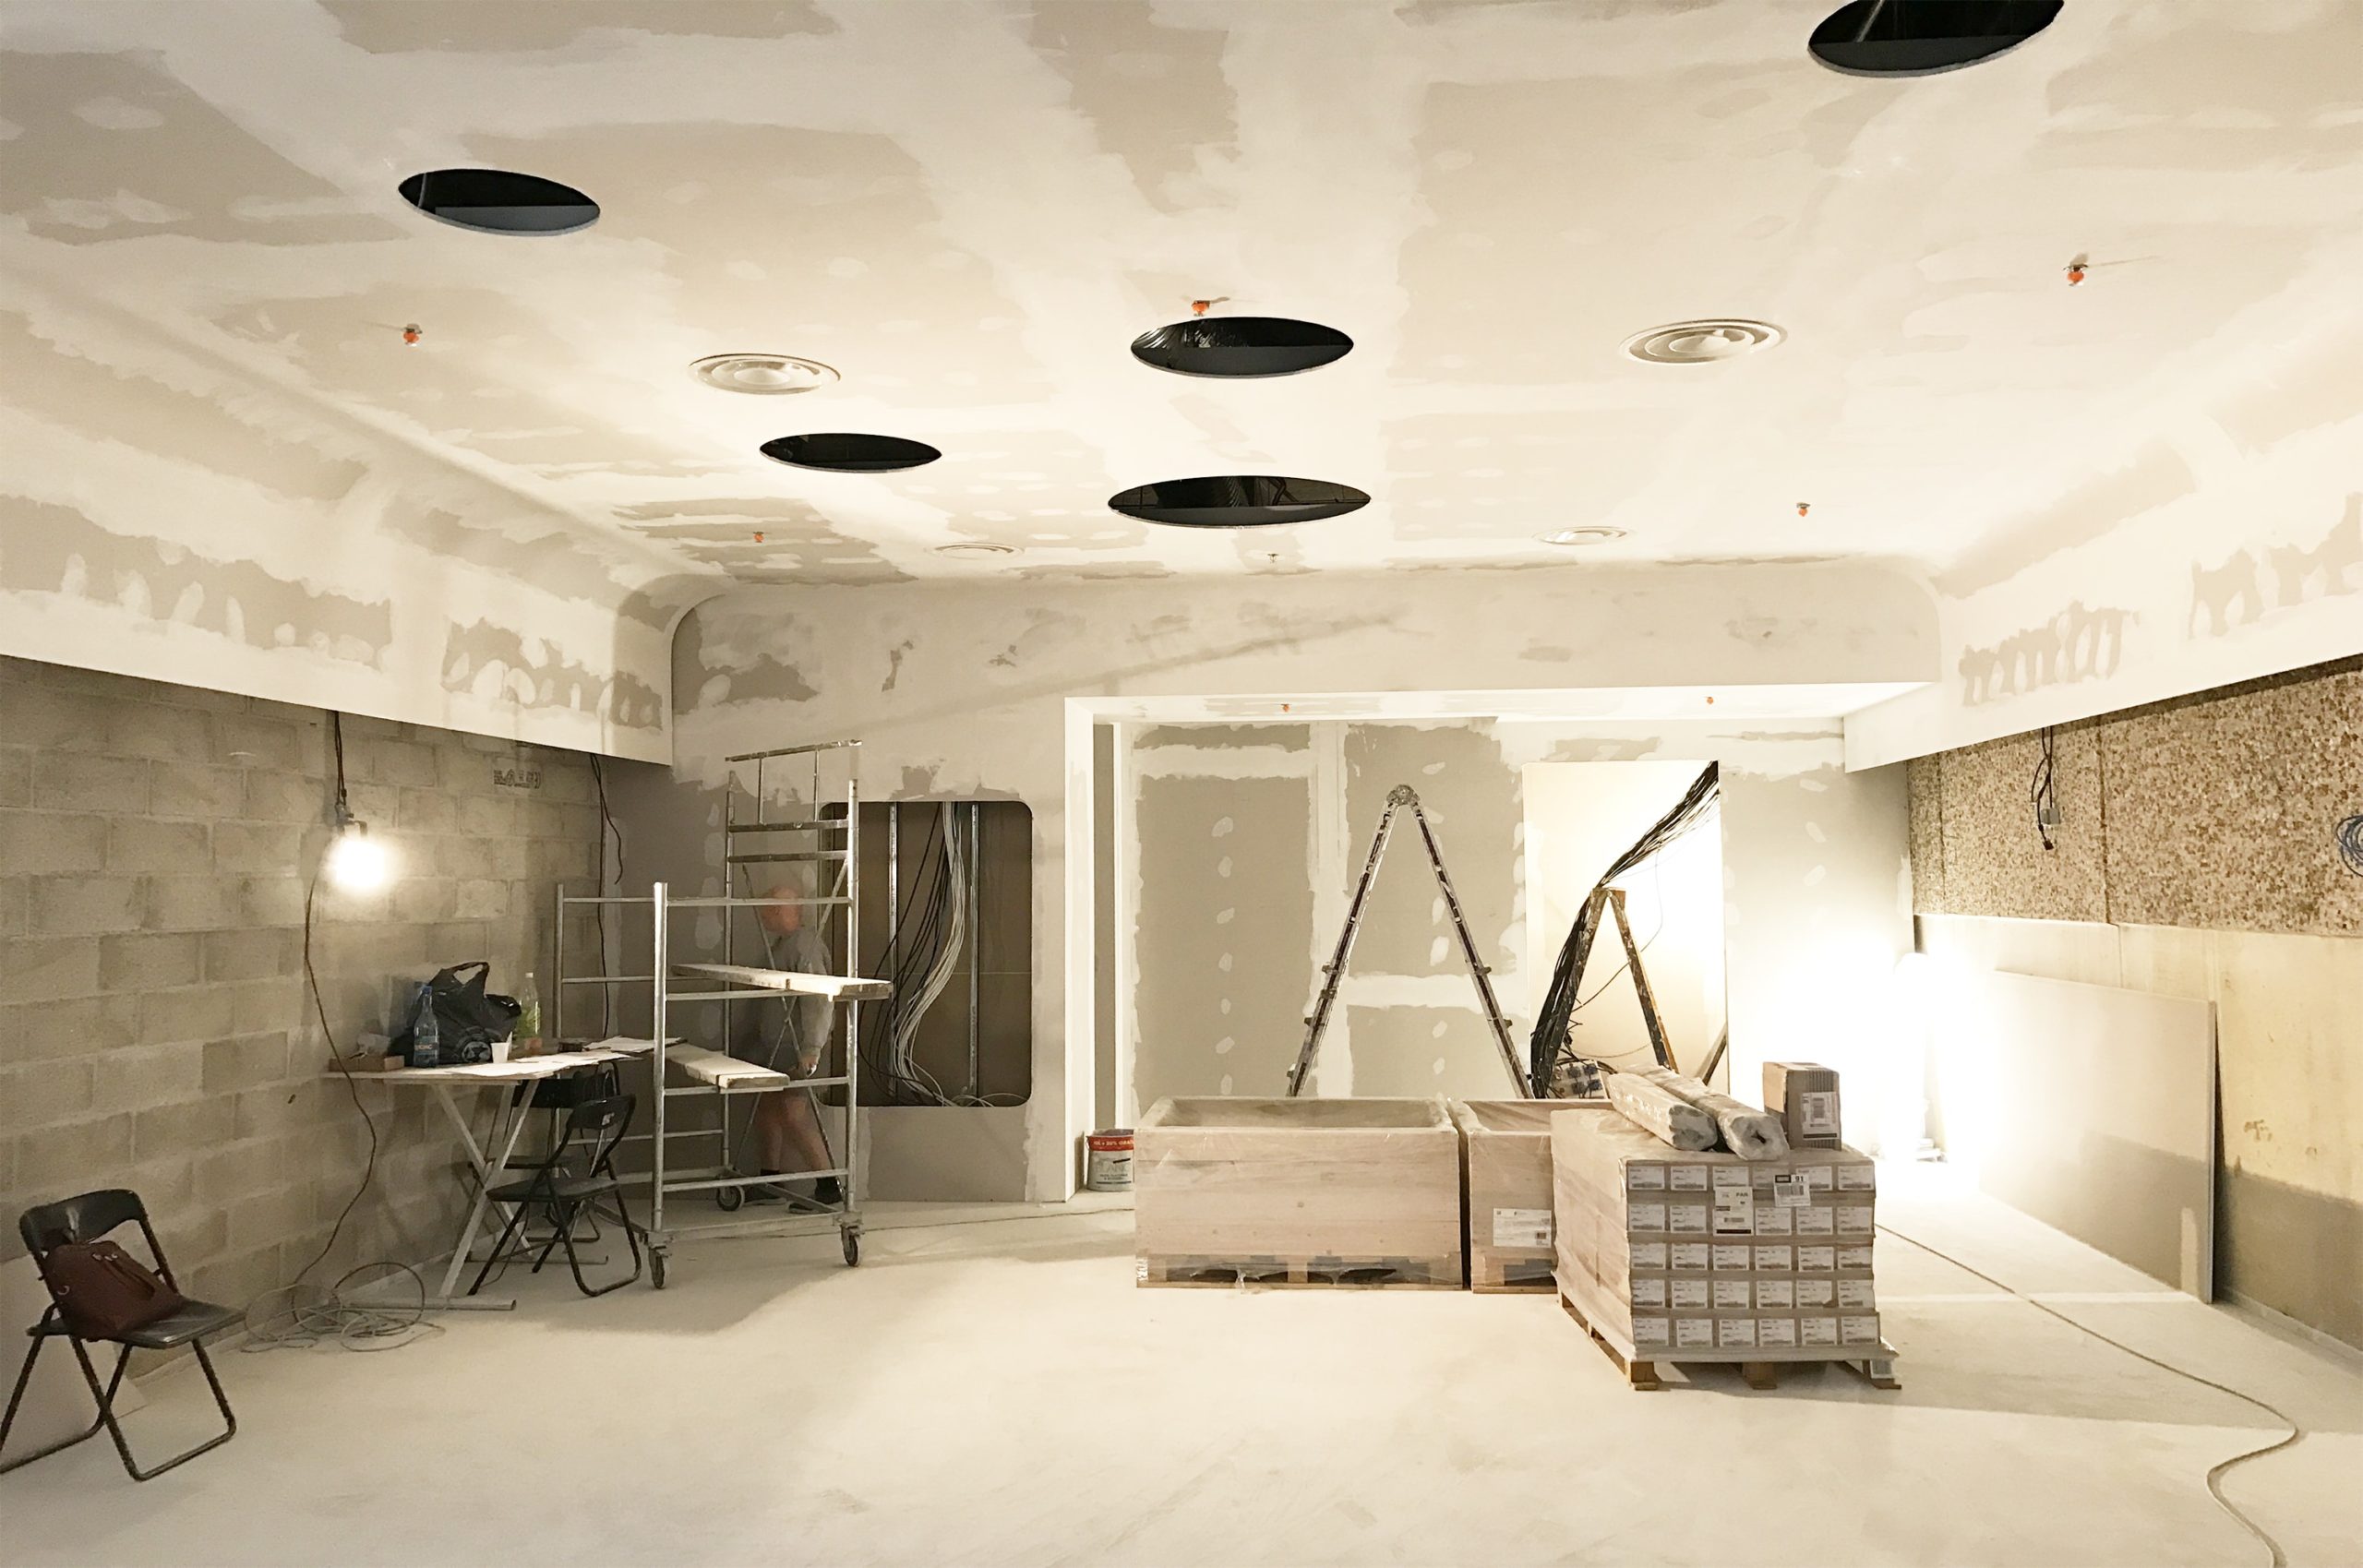 Faux plafond, Dalles - Bureaux, Open Space, Office - Travaux / Rénovation